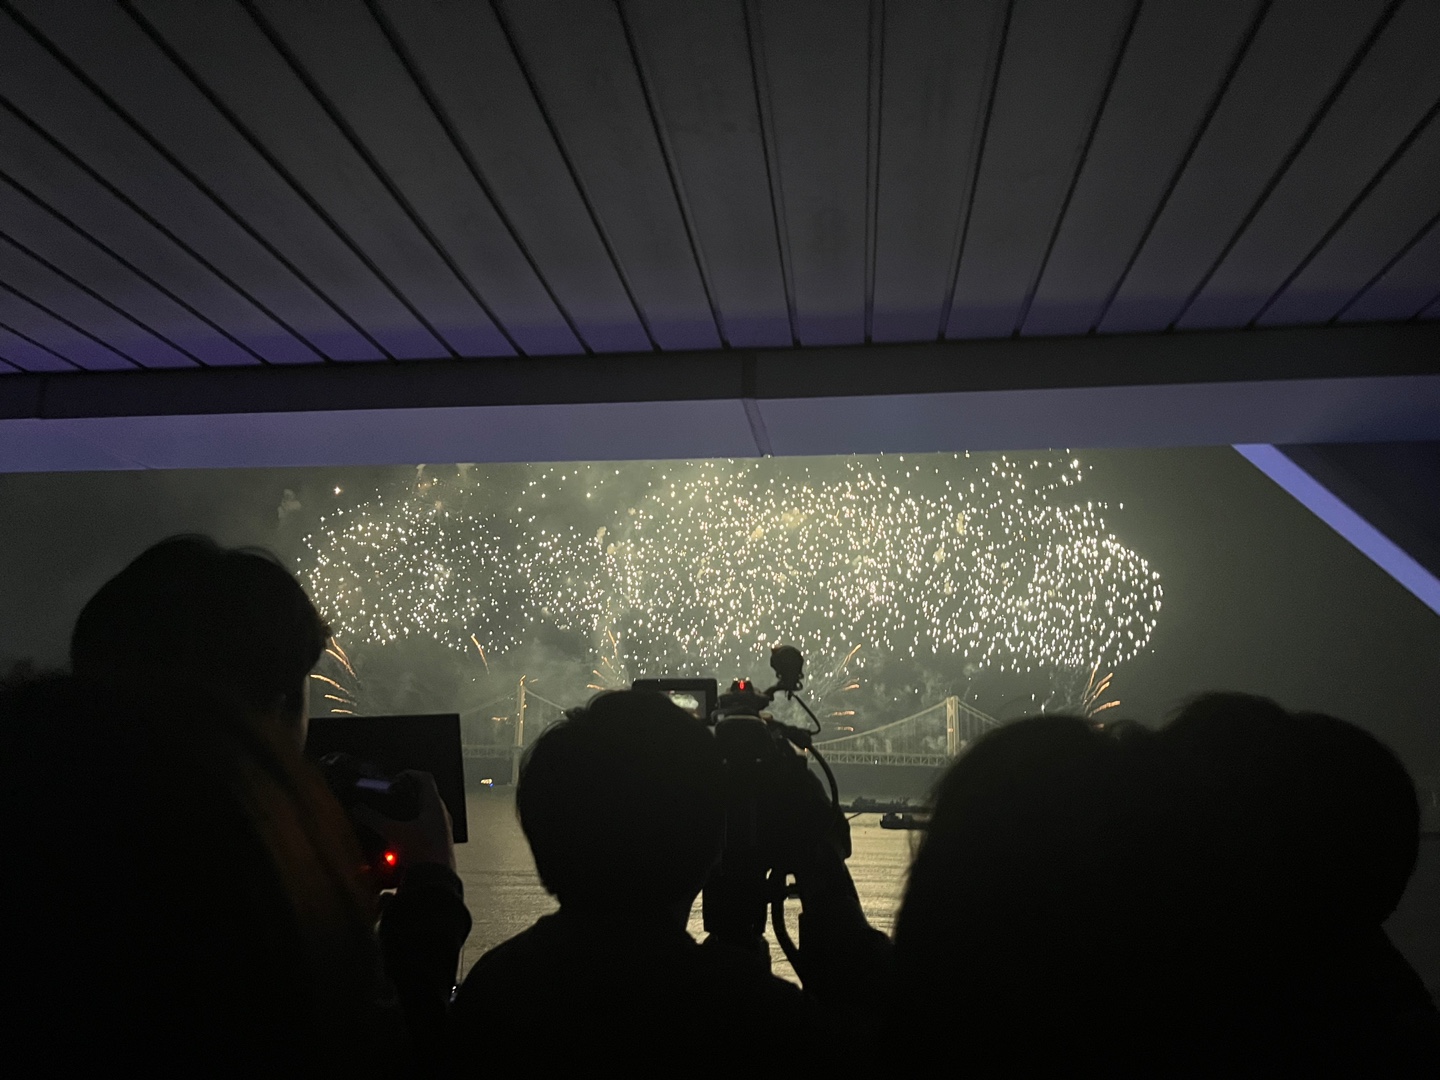 지난 6일, 부산 광안리 해수욕장 앞에서 이른바 '불꽃쇼'가 펼쳐졌다. 2030 부산엑스포 개최에 따른 실사단 방문의 마지막 일정이었다. 기자들은 분주하게 그 장면을 촬영했다. 나는 뒤에서 그들을 찍었다. 